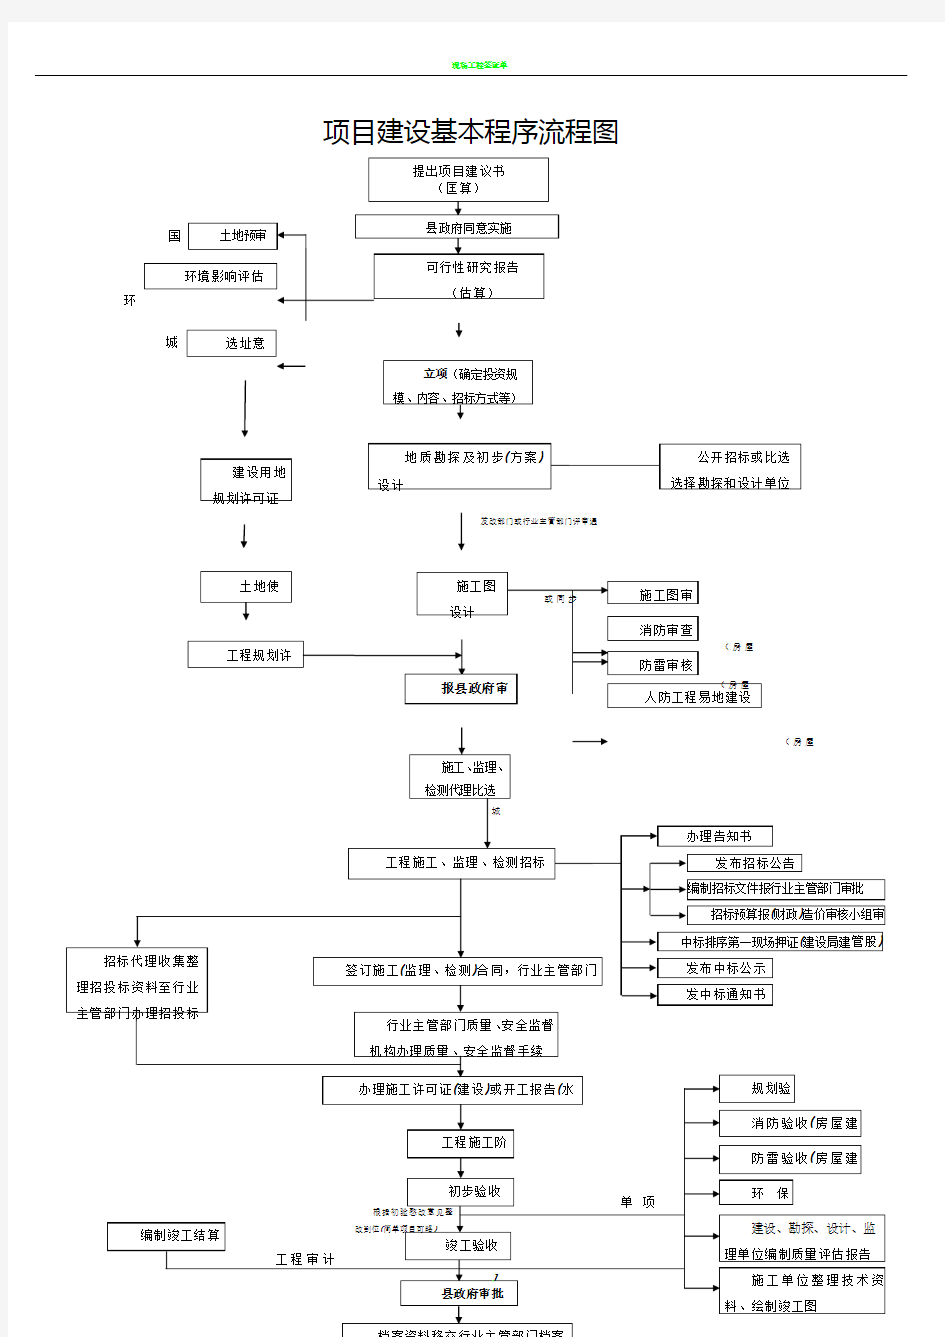 工程项目建设基本程序流程图